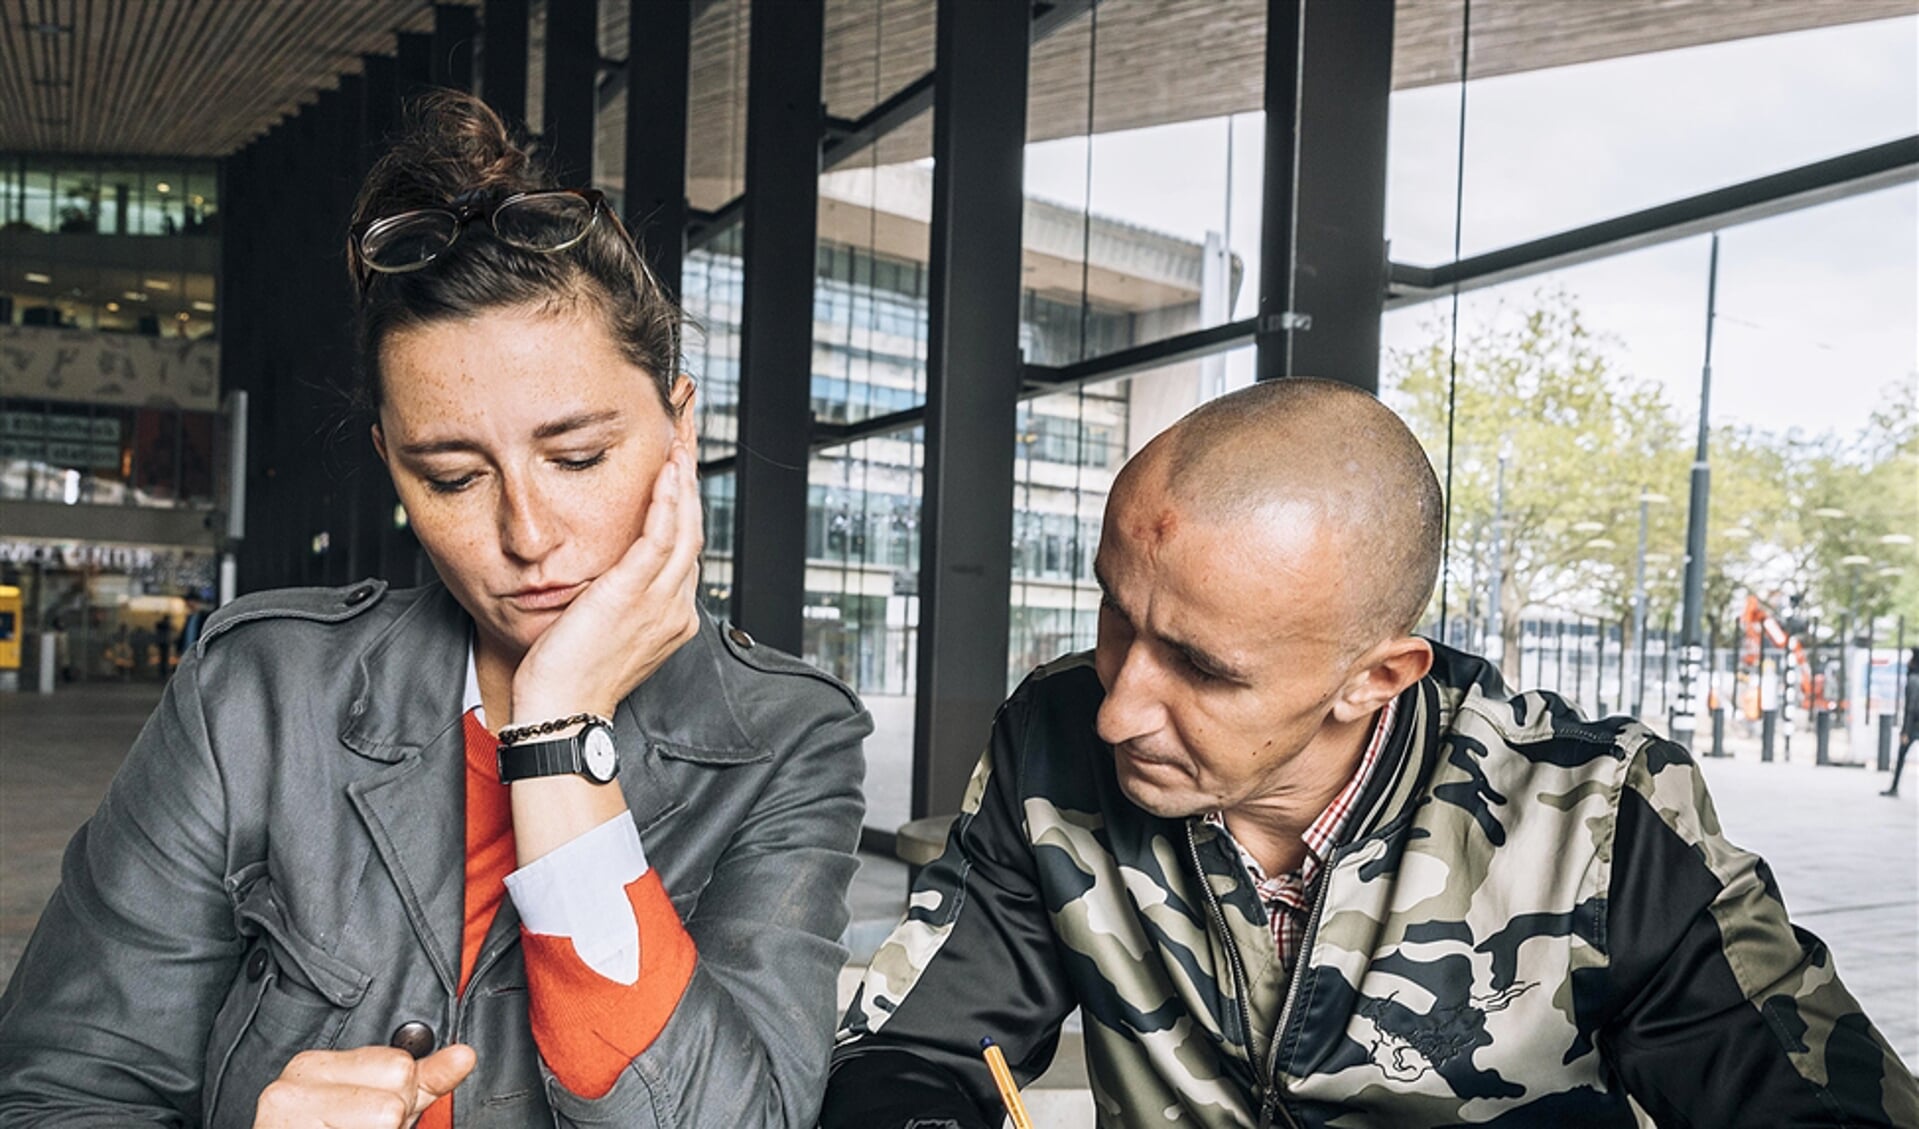 De Poolse dakloze Szymon en maatschappelijk werker Anna Bartmann van de stichting Barka bellen op Rotterdam Centraal met een uitzendbureau.